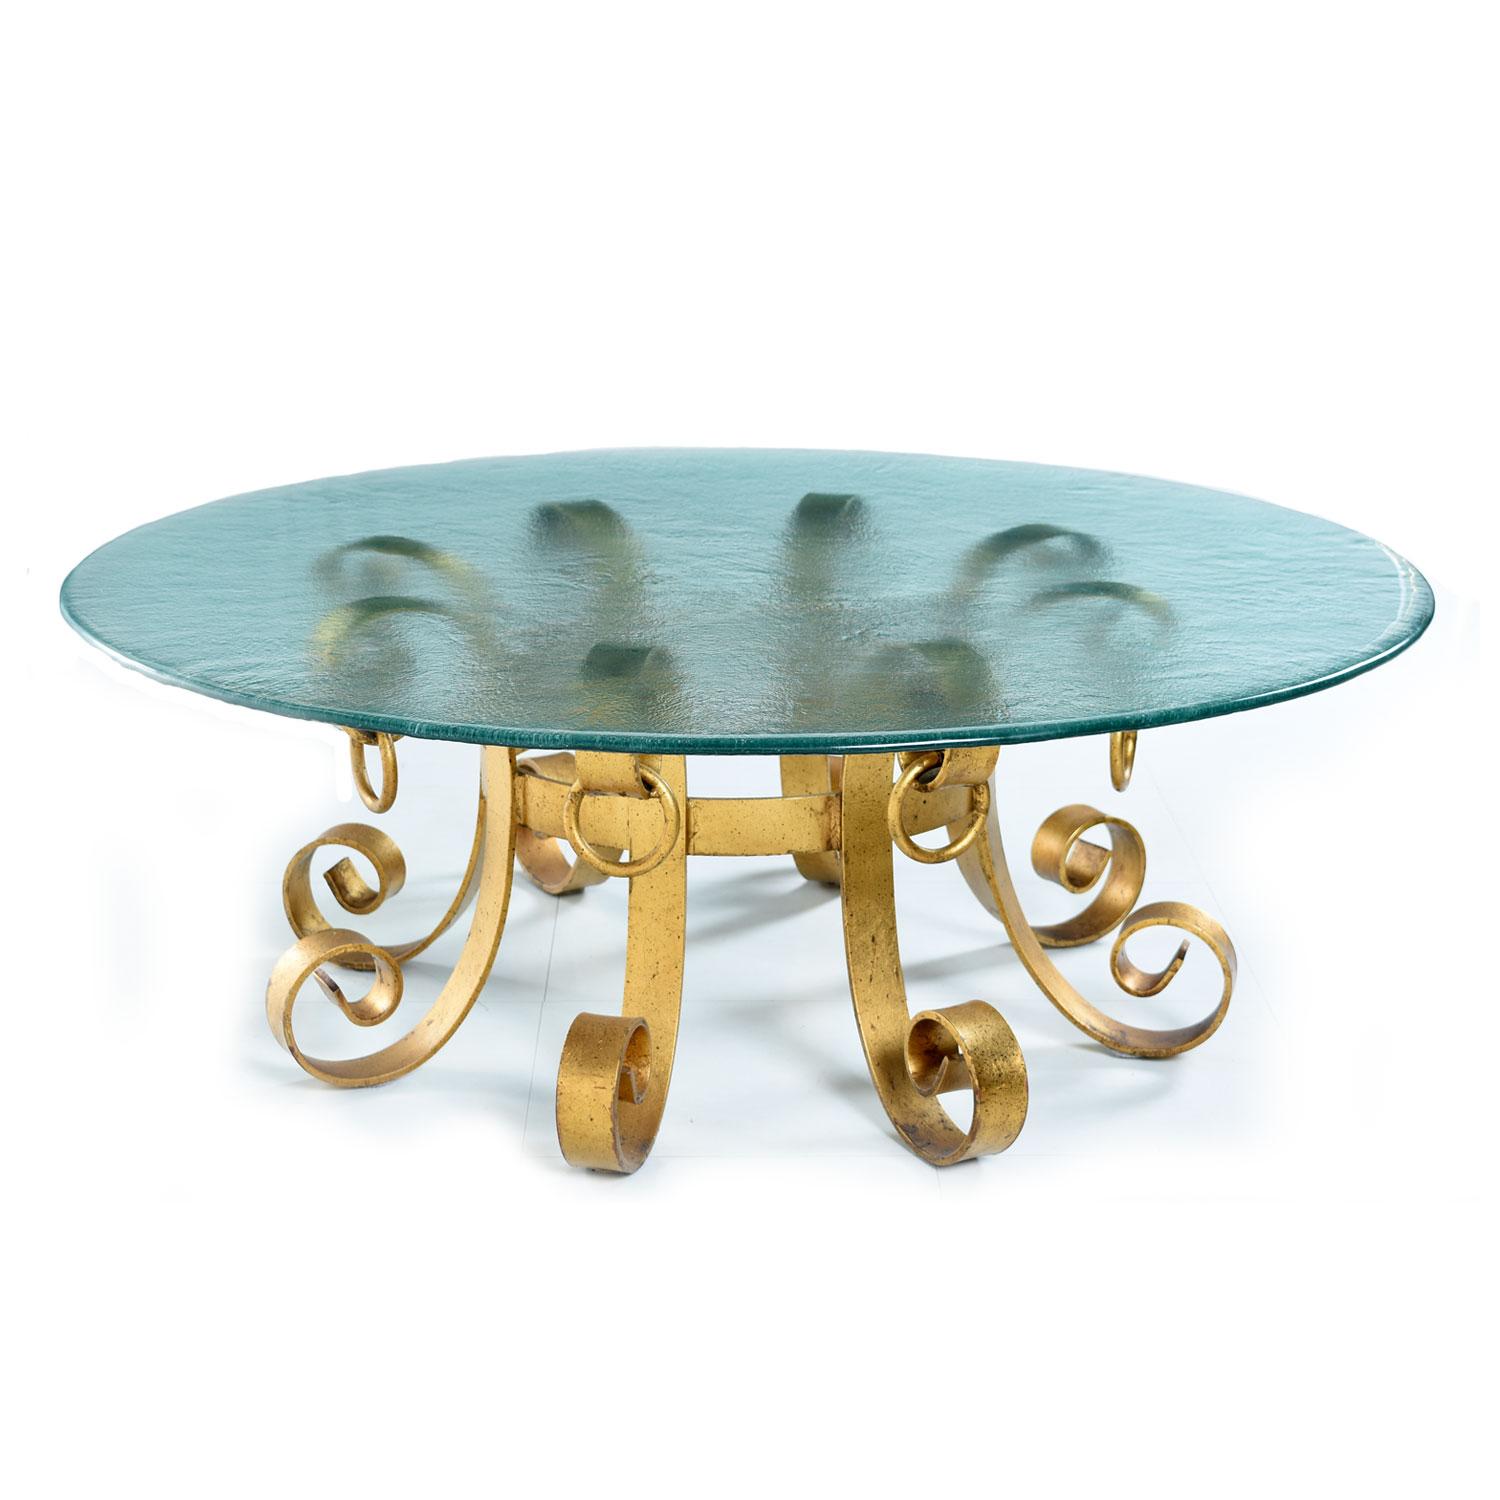 Spectaculaire table basse vintage Hollywood Regency avec plateau en verre ondulé. Base lourde en métal ferreux, dorée à la peinture de couleur or et noir moucheté. Élégante forme de volute fleurie avec de lourdes décorations en forme de heurtoir. Un